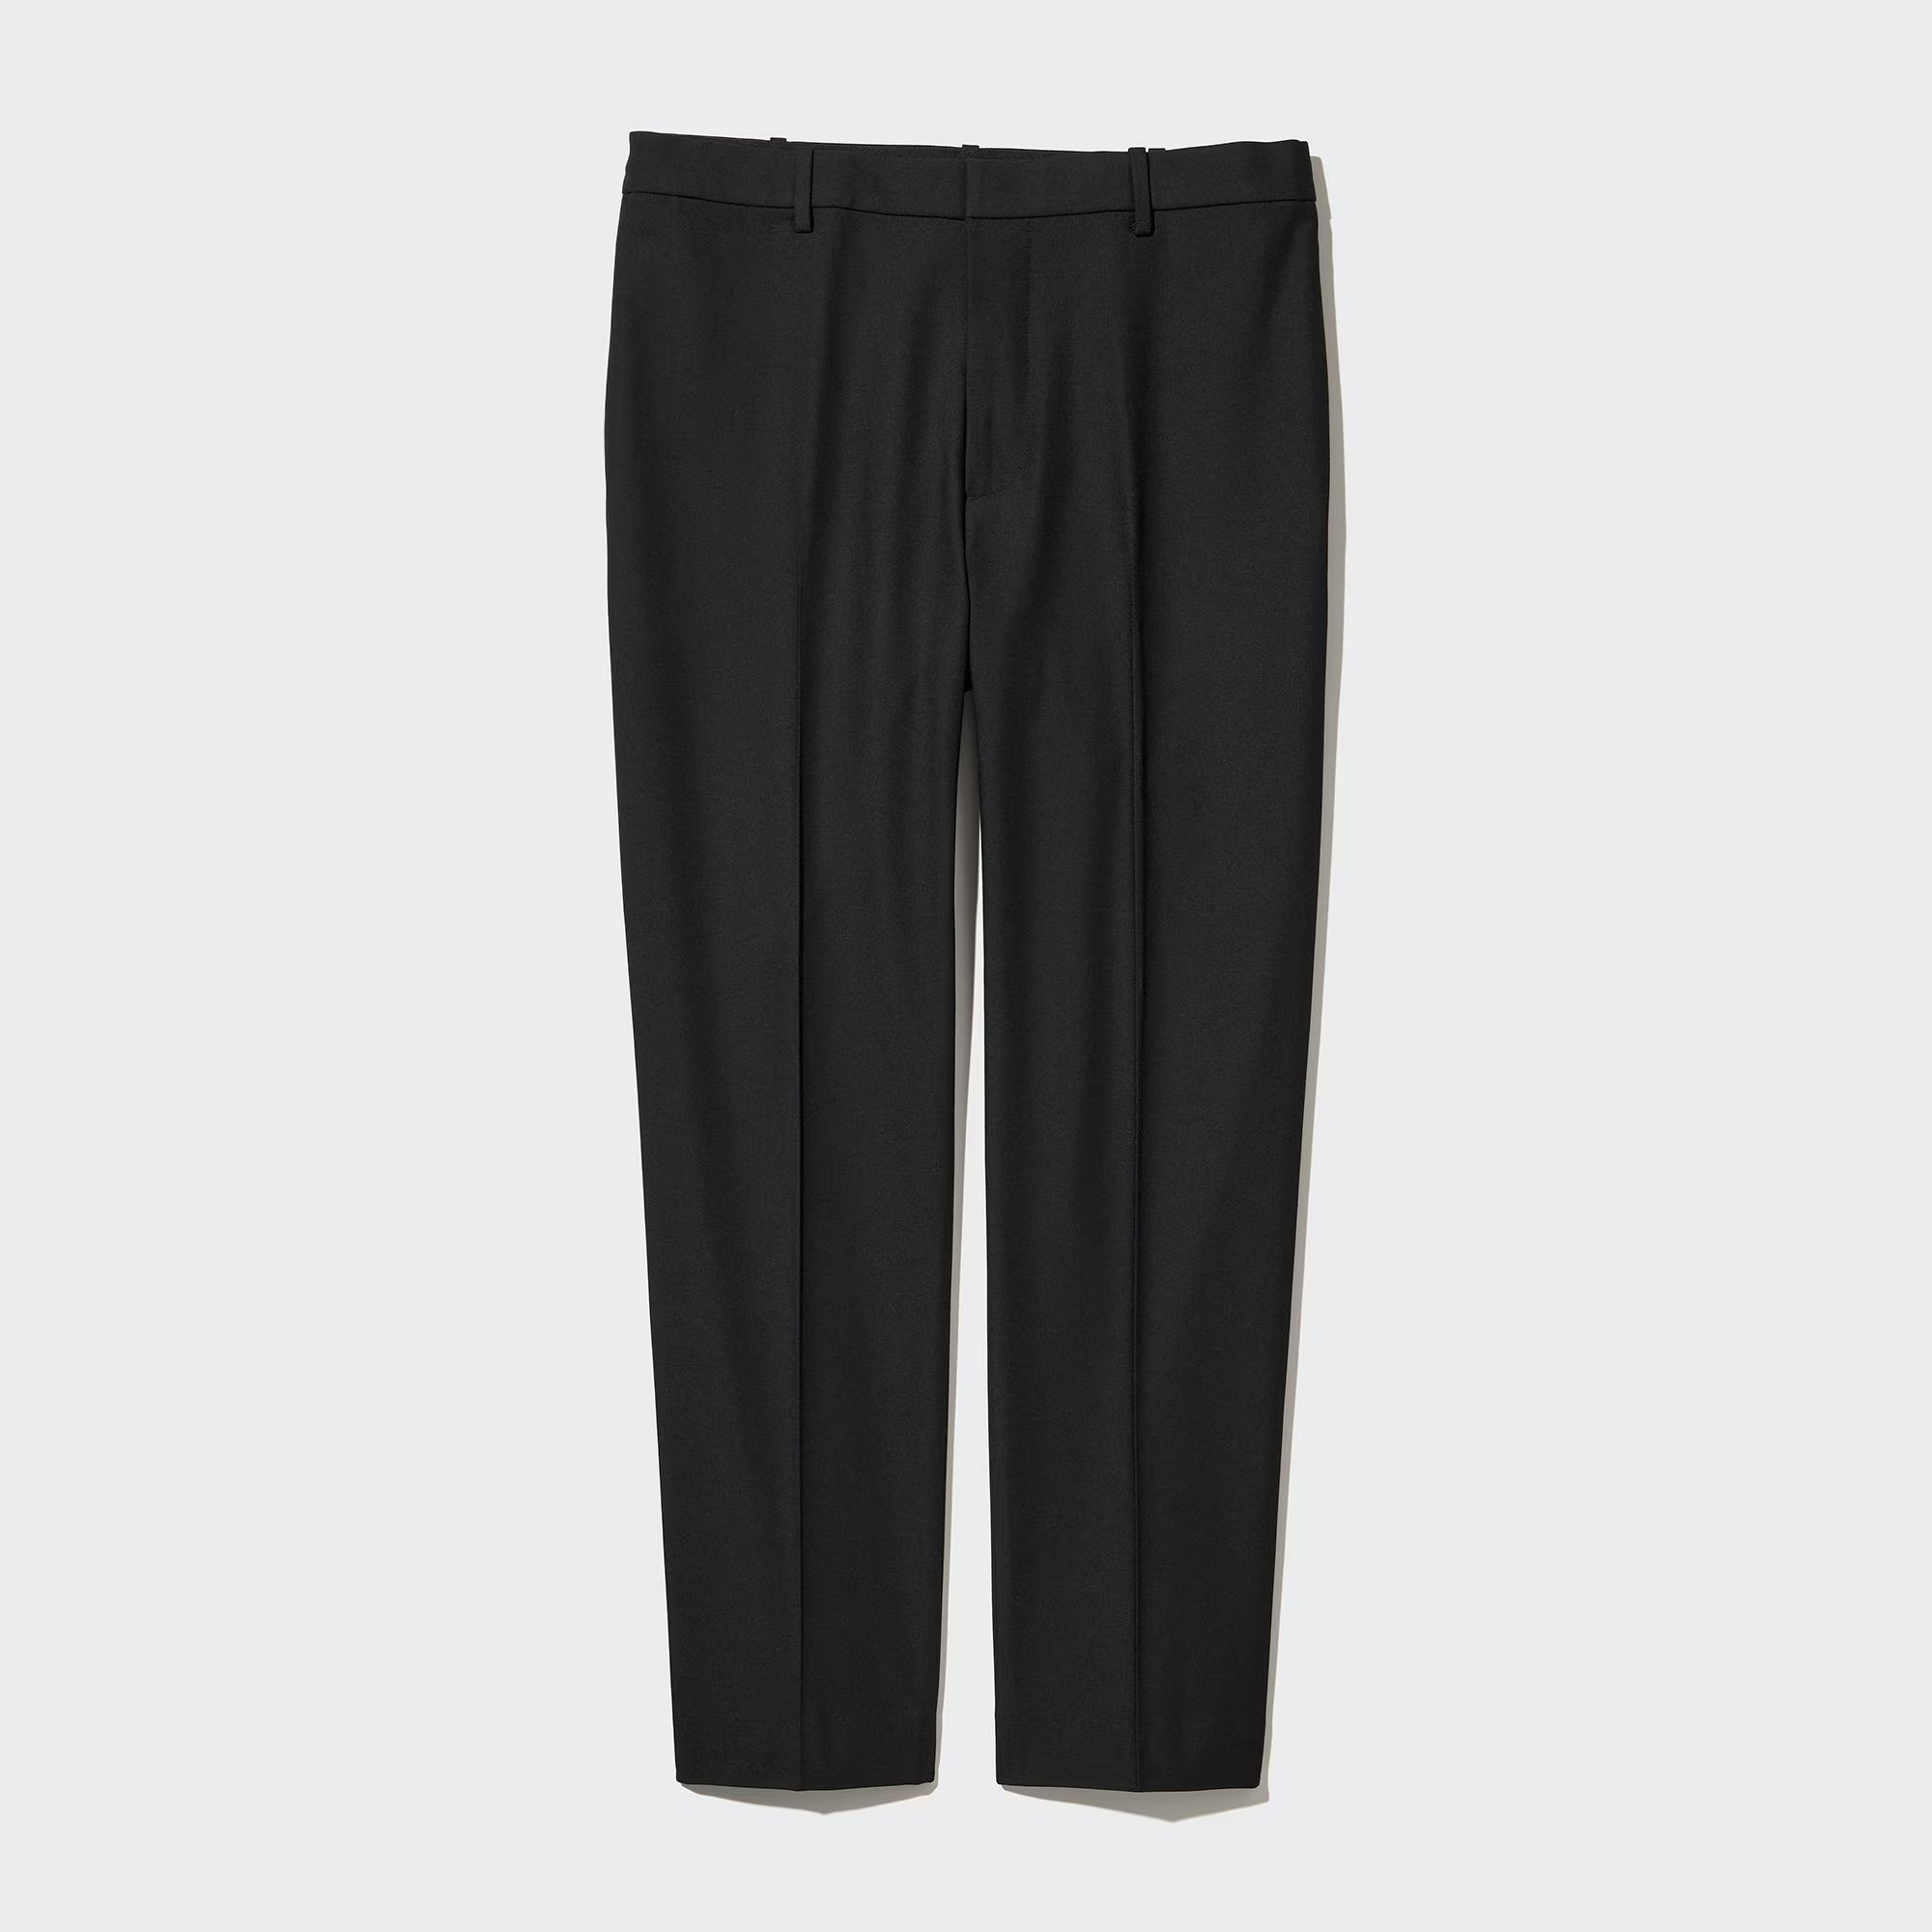 Брюки Uniqlo Smart Wool-Like Ankle Length, черный мужские брюки uniqlo smart ankle length trousers серый